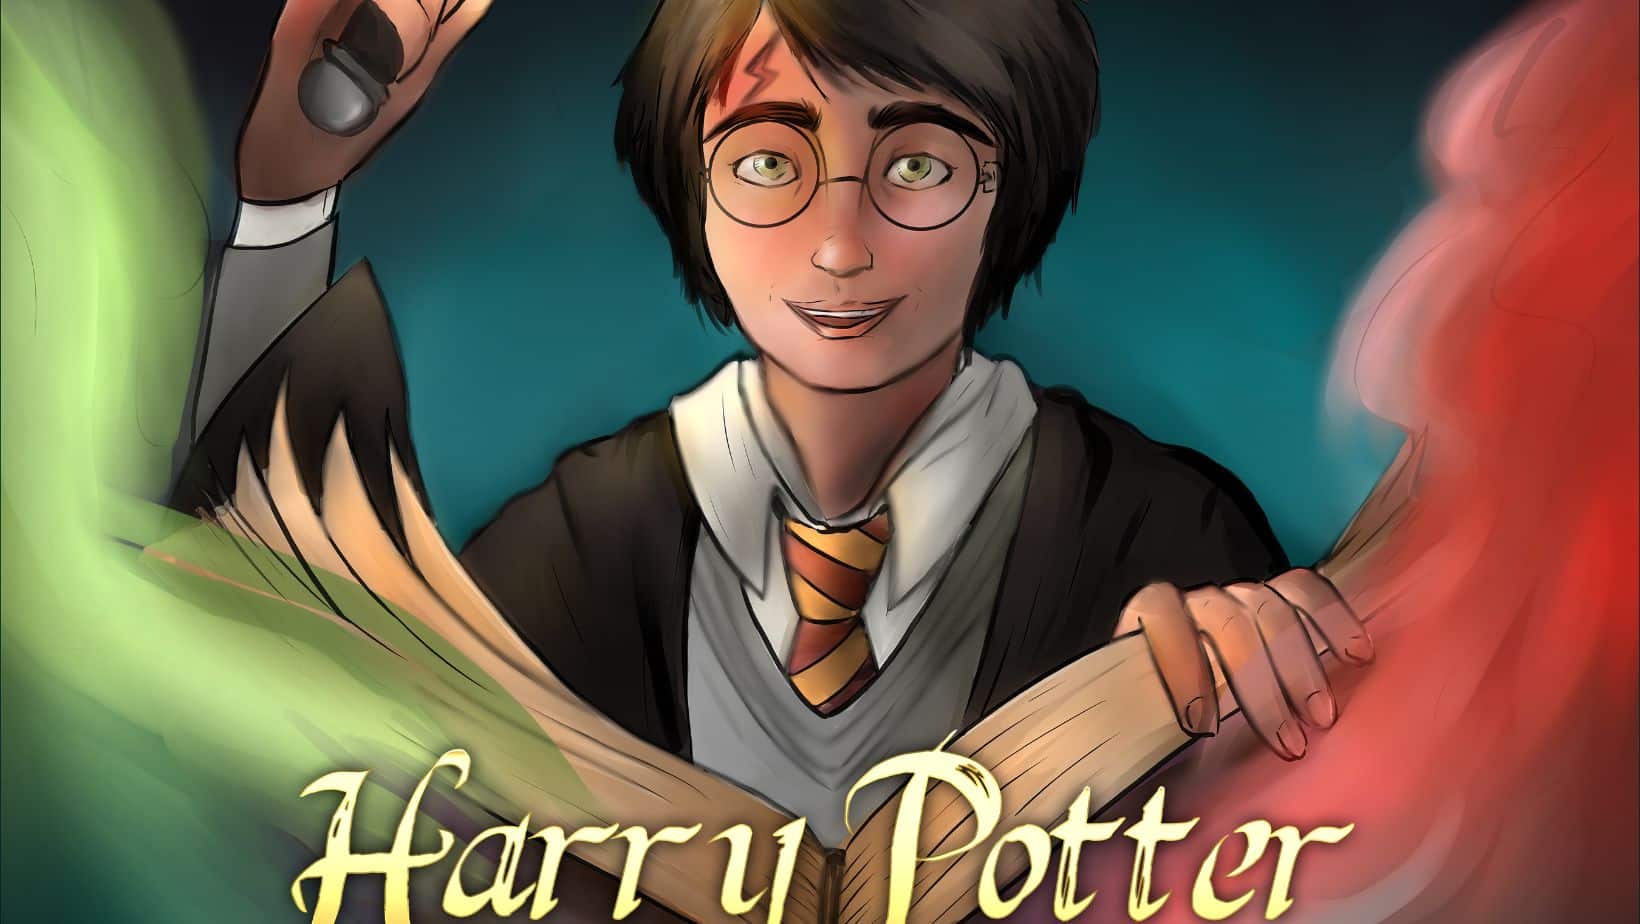 Harry Potter arriva in teatro: a Catania il primo capitolo della saga “La Pietra Filosofale”